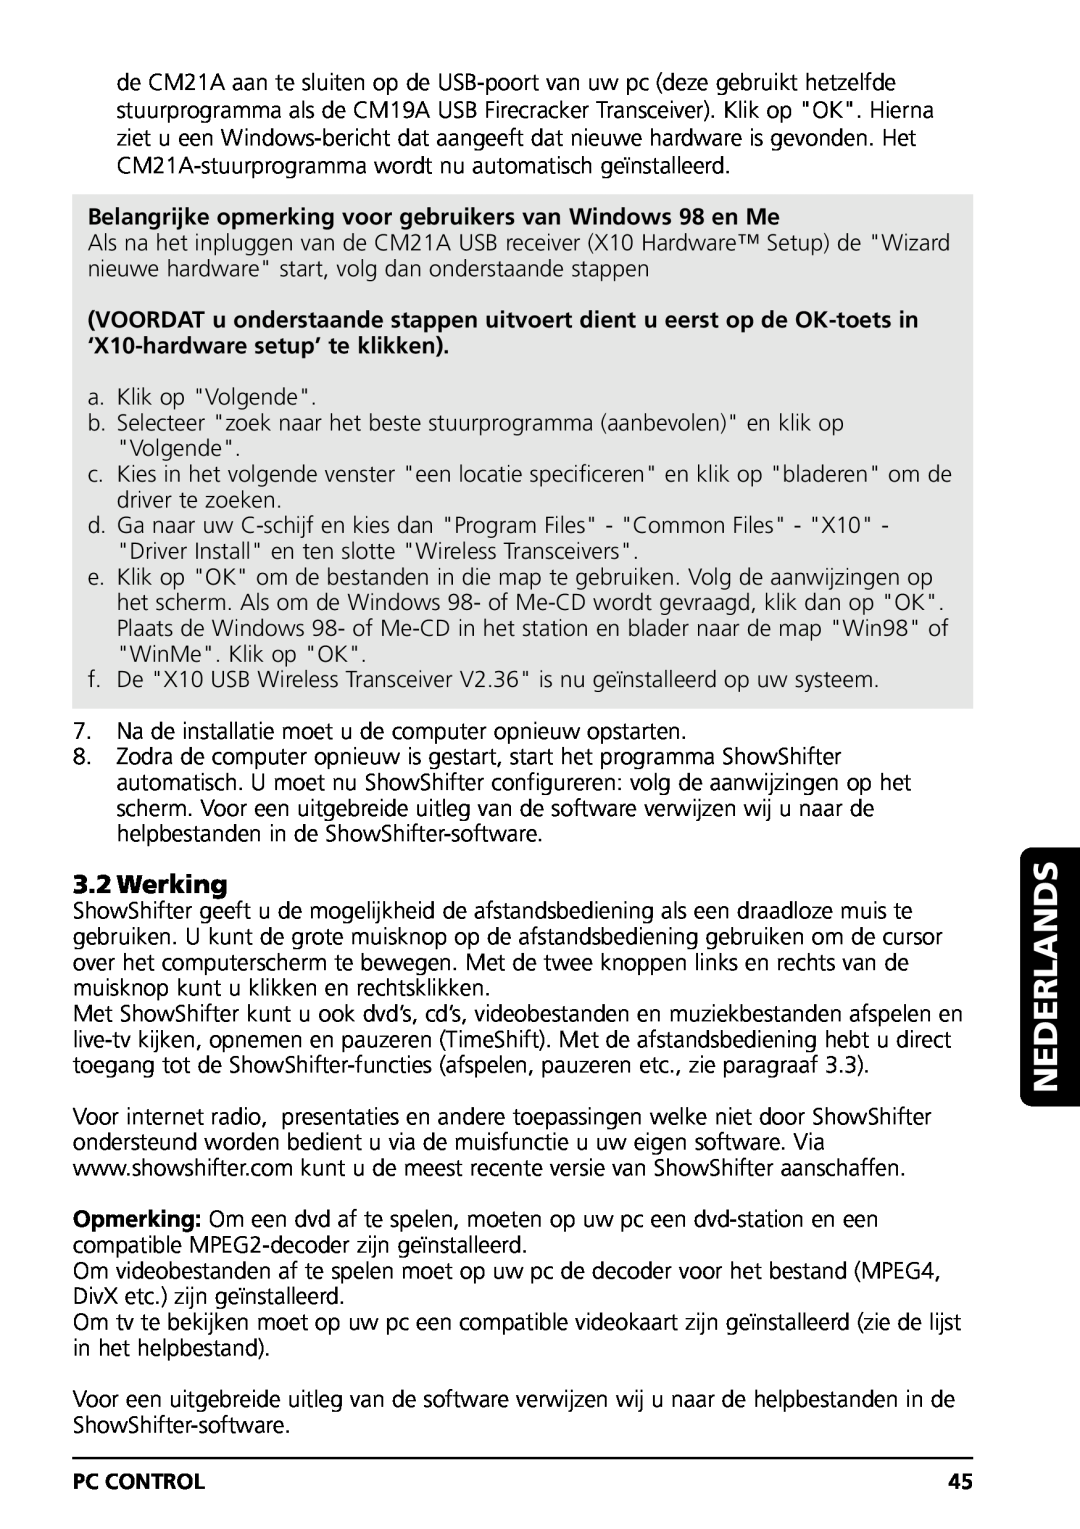 Marmitek PC CONTROL owner manual Werking, Belangrijke opmerking voor gebruikers van Windows 98 en Me, Nederlands 